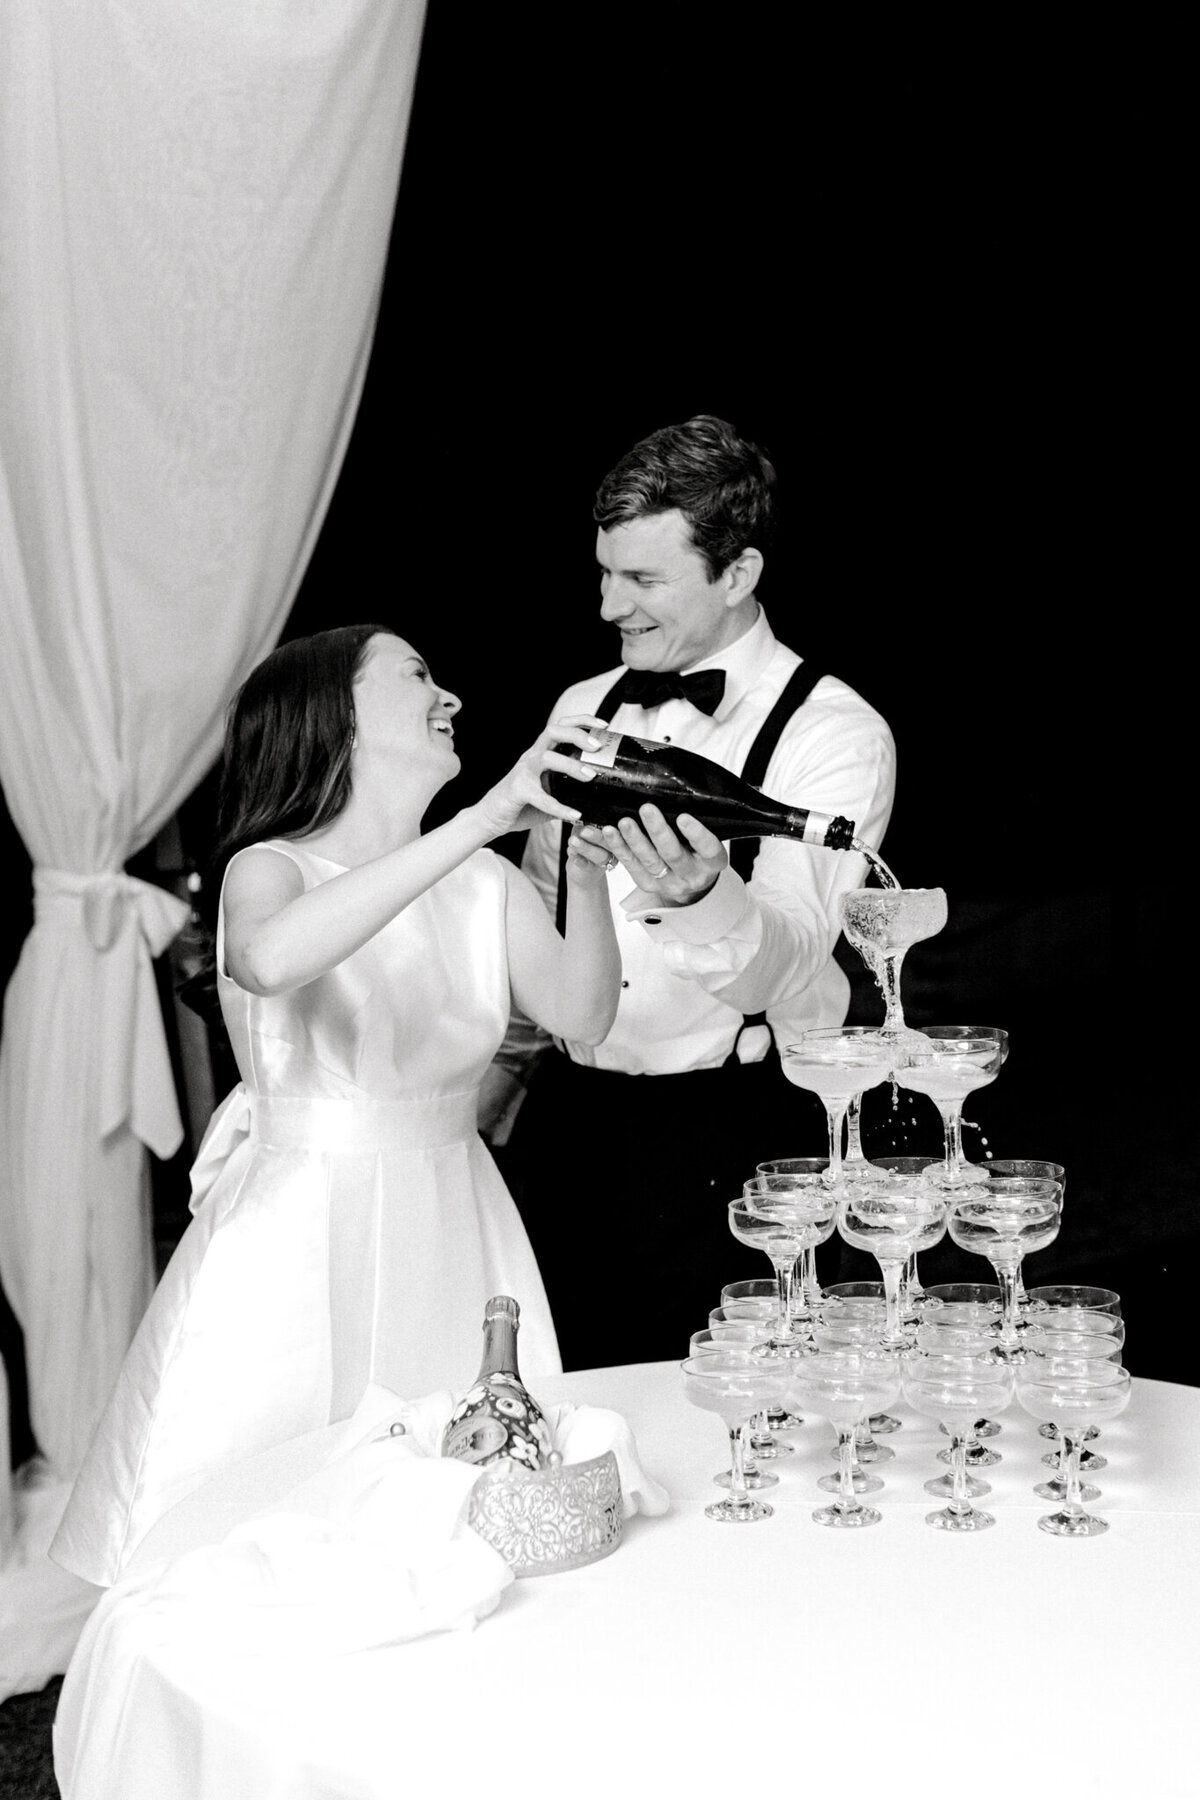 Gena & Matt's Wedding at the Dallas Arboretum | Dallas Wedding Photographer | Sami Kathryn Photography-270